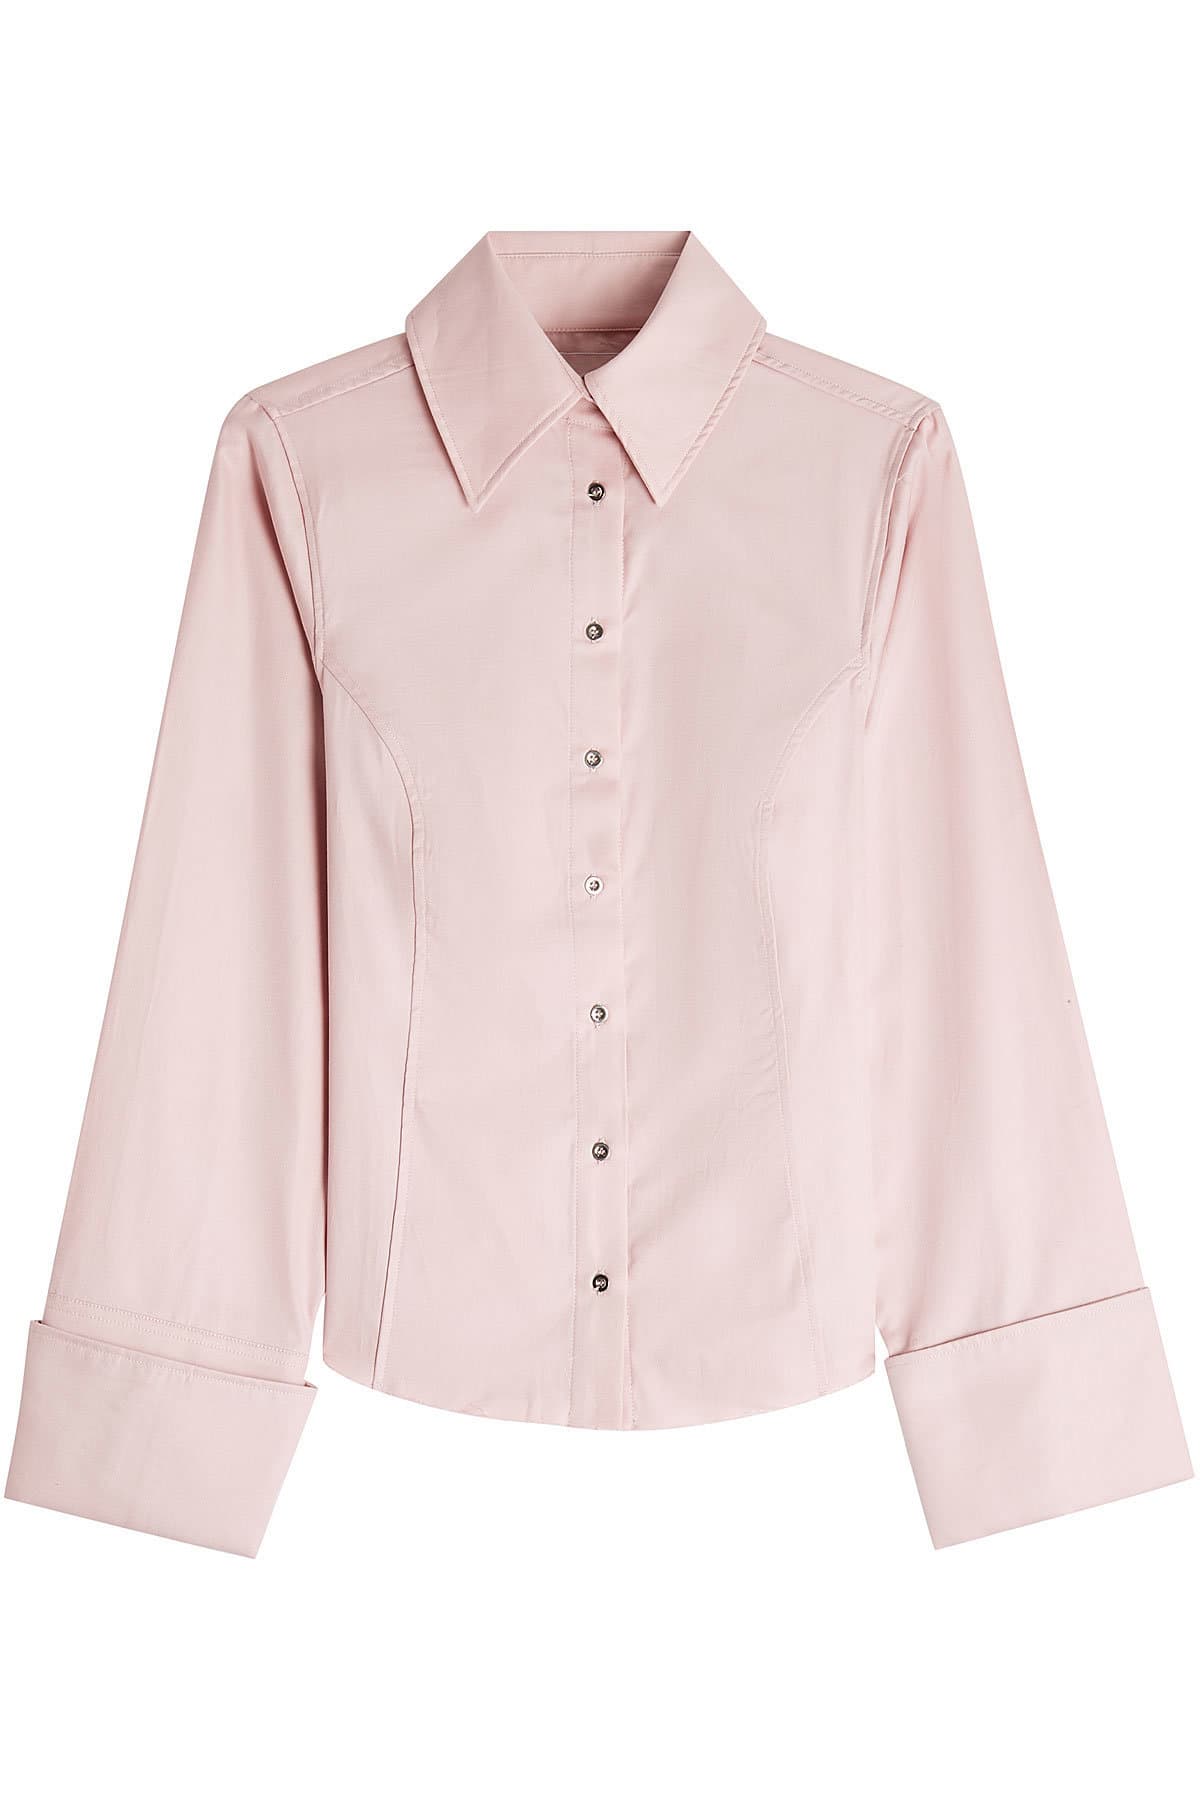 Marques' Almeida - Princess Line Classic Cotton Shirt